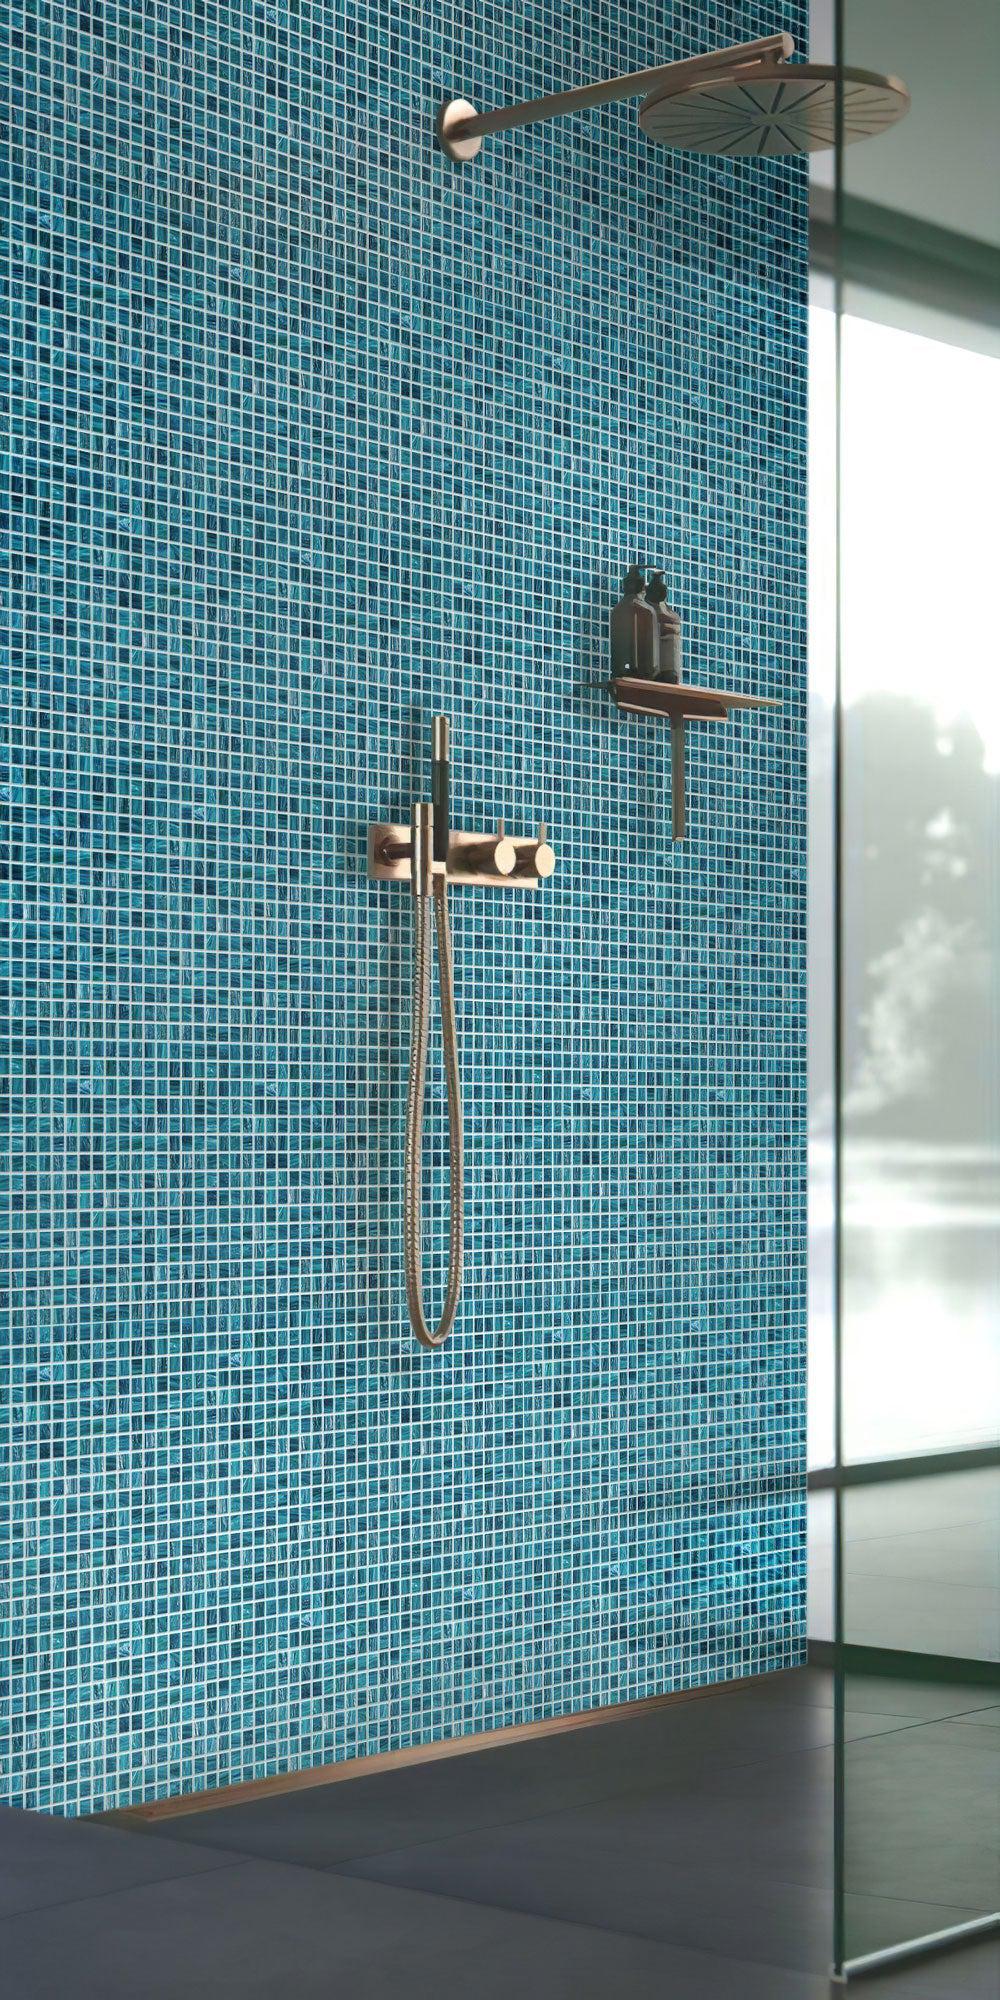 Deep Cerulean Blue Mixed Squares Glass Pool Tile shower backsplash